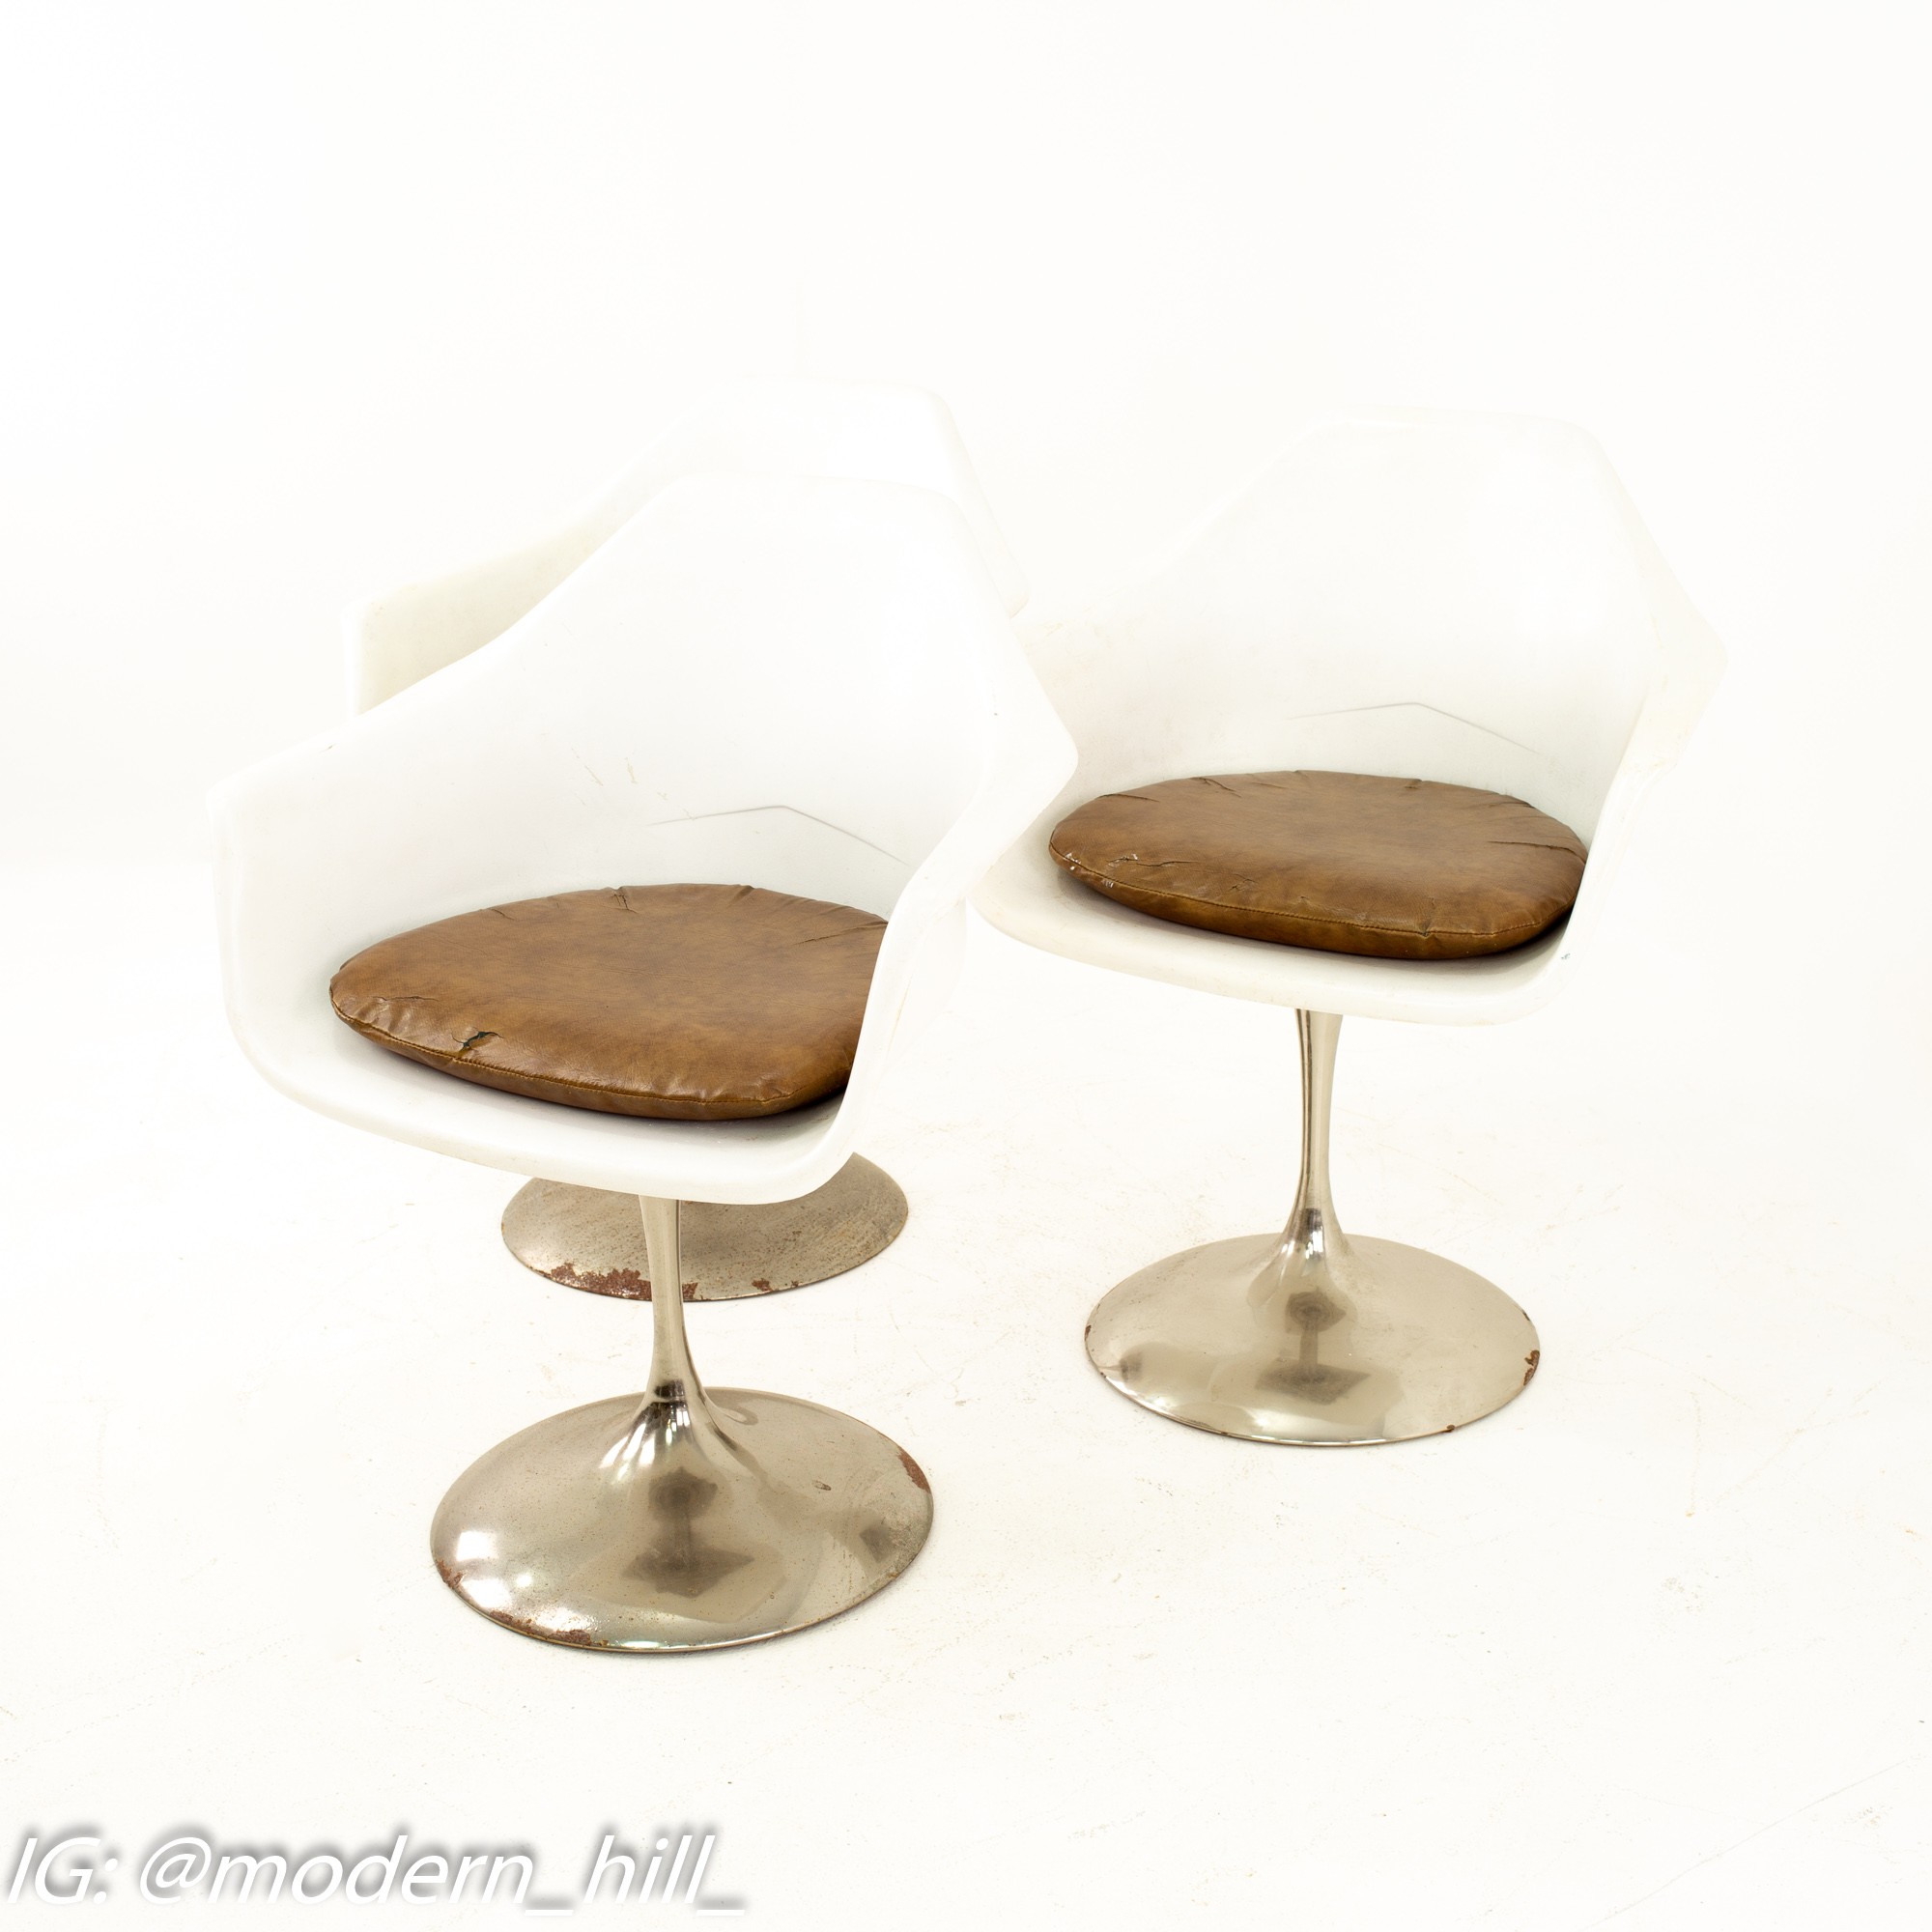 Eero Saarinen Style Mid Century Tulip Dining Chair - Pair